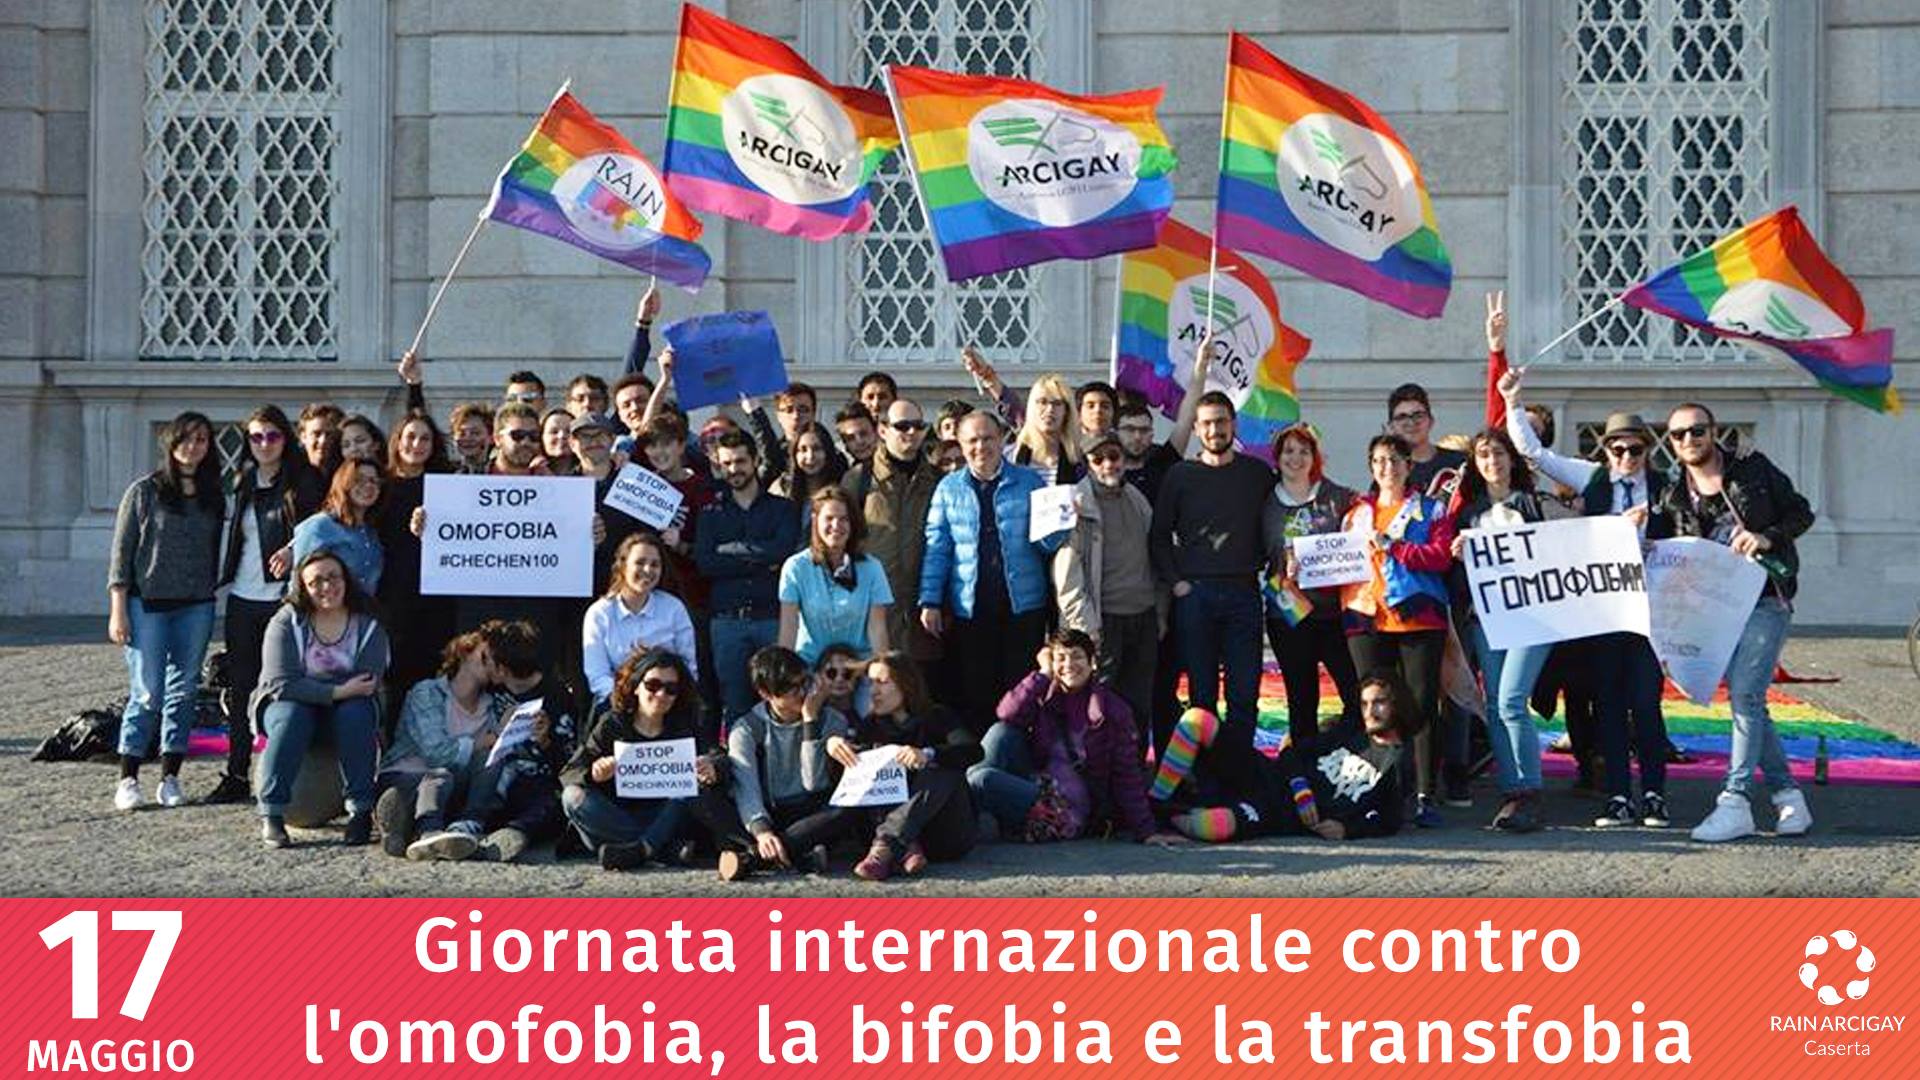 giornata-internazionale-contro-l-omofobia-la-bifobia-e-la-transfobia-rain-arcigay-caserta-onlus